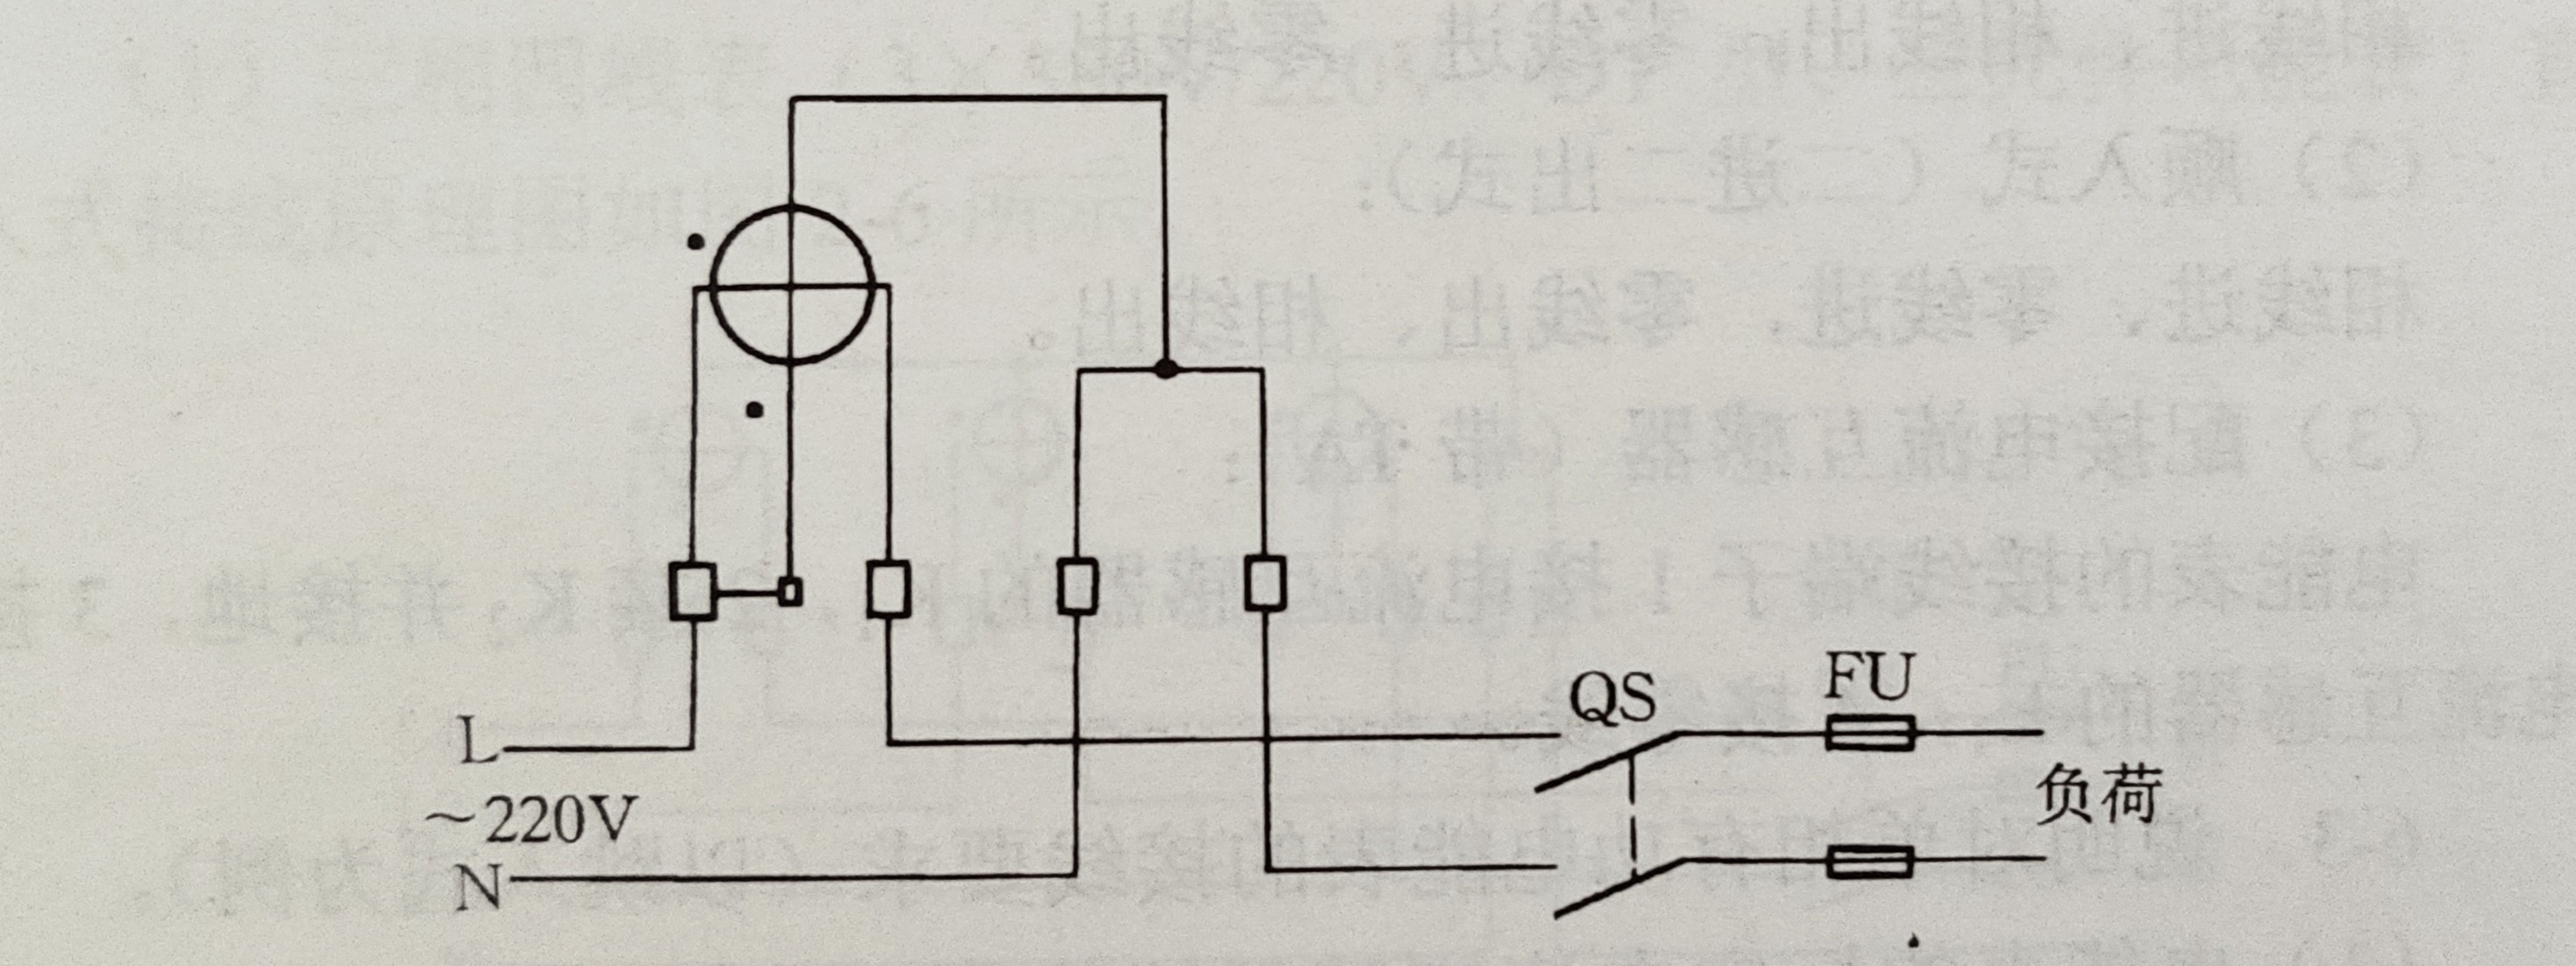 ②单相电能表顺入式接线原理图如图所示